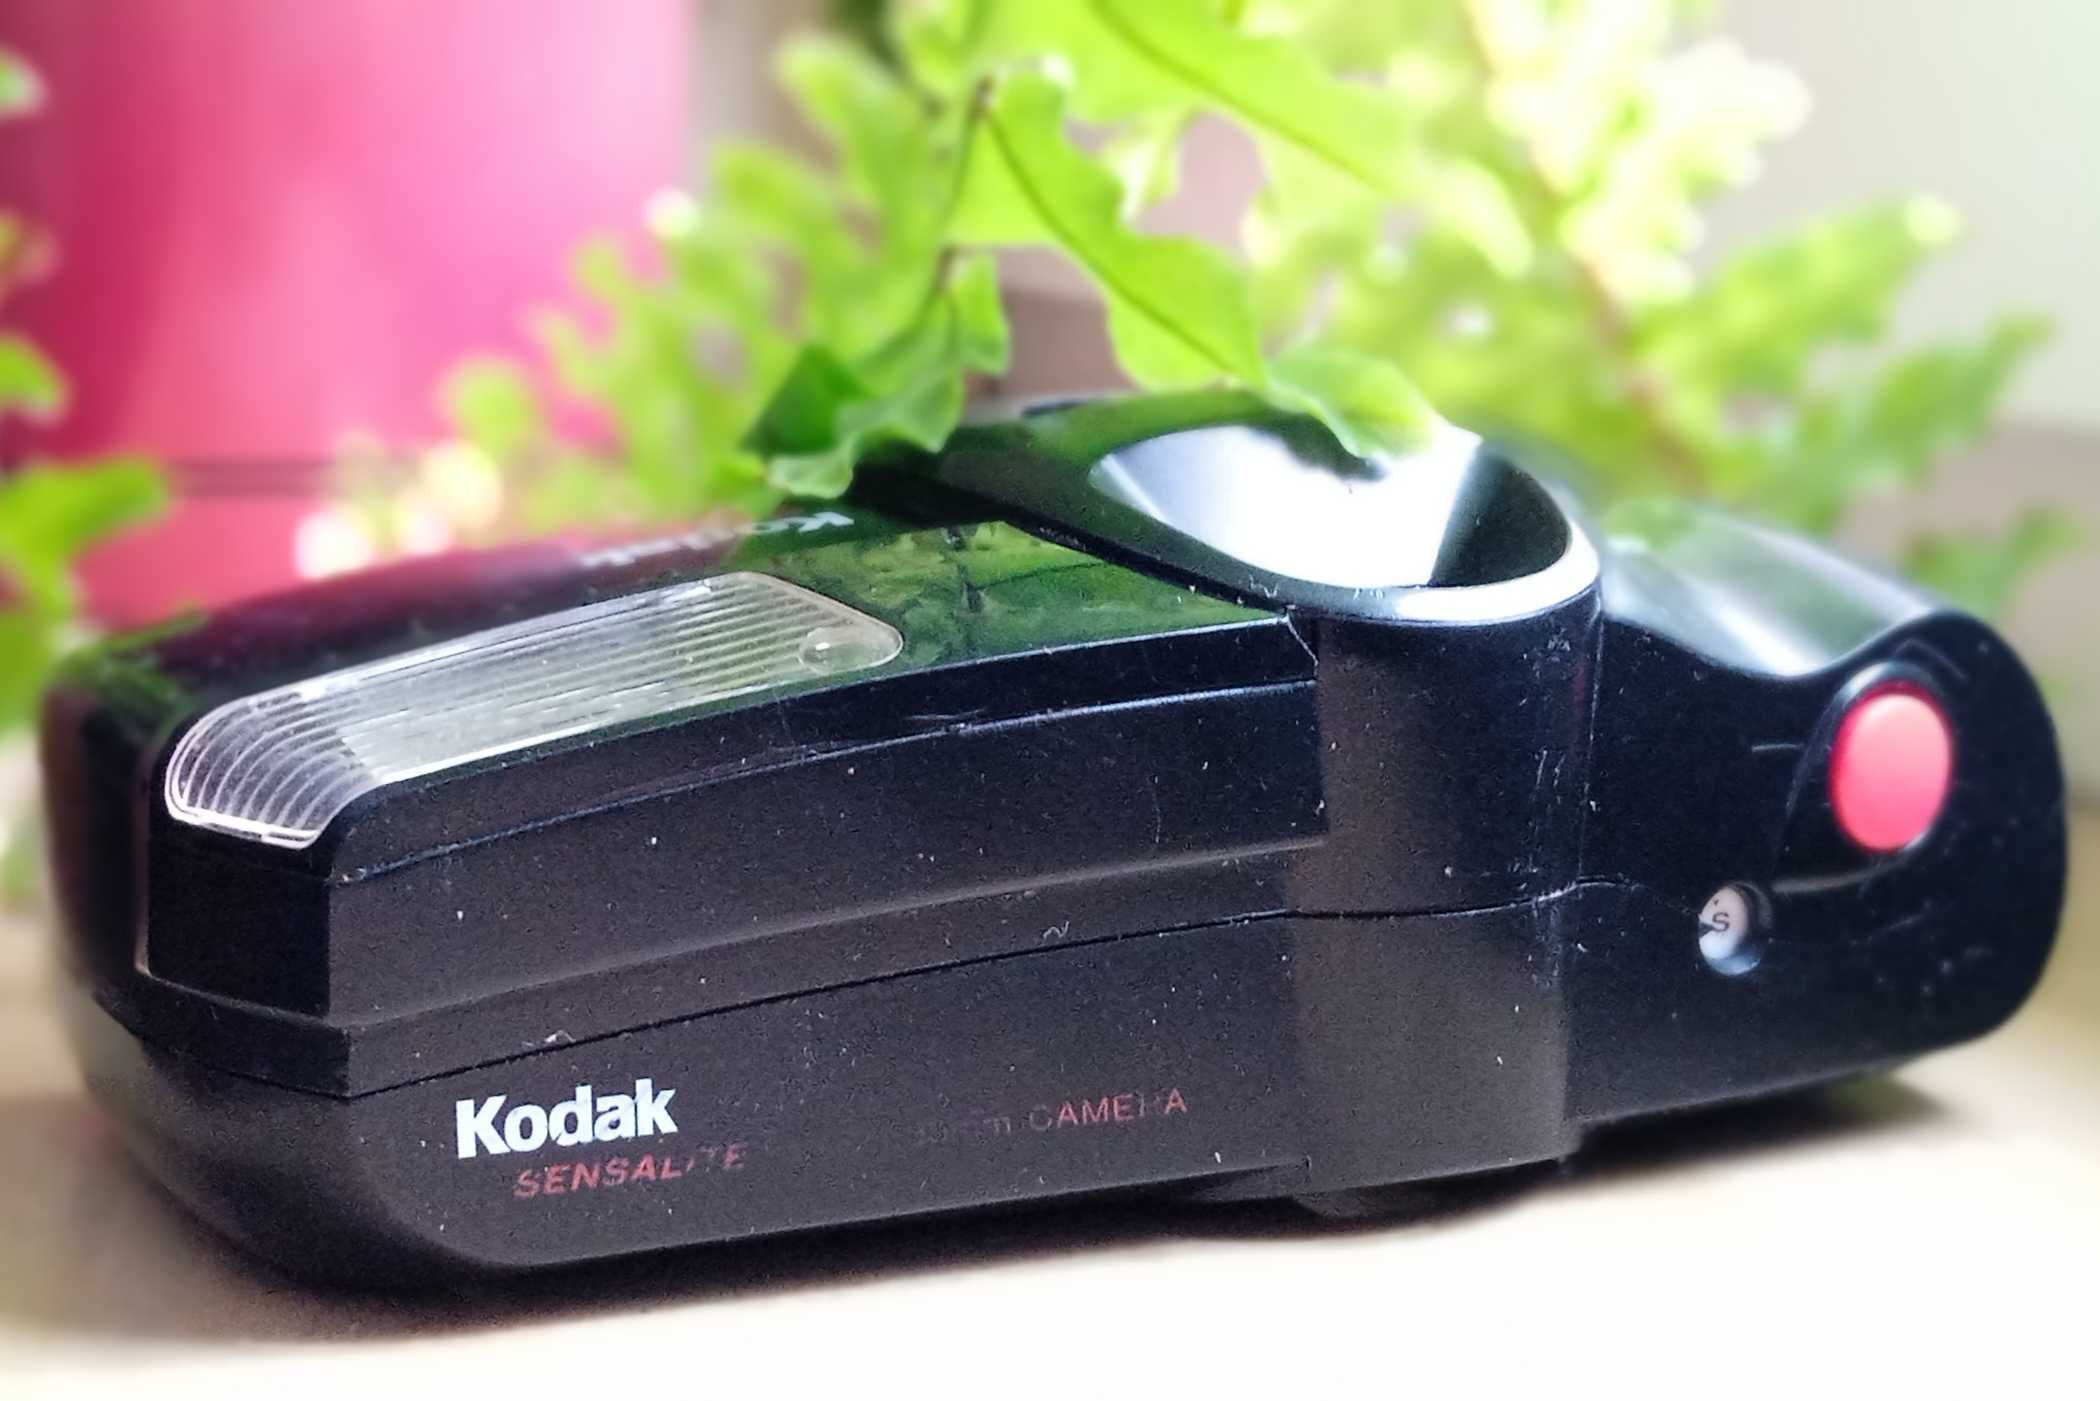 Aparat fotograficzny analogowy Kodak Star 575